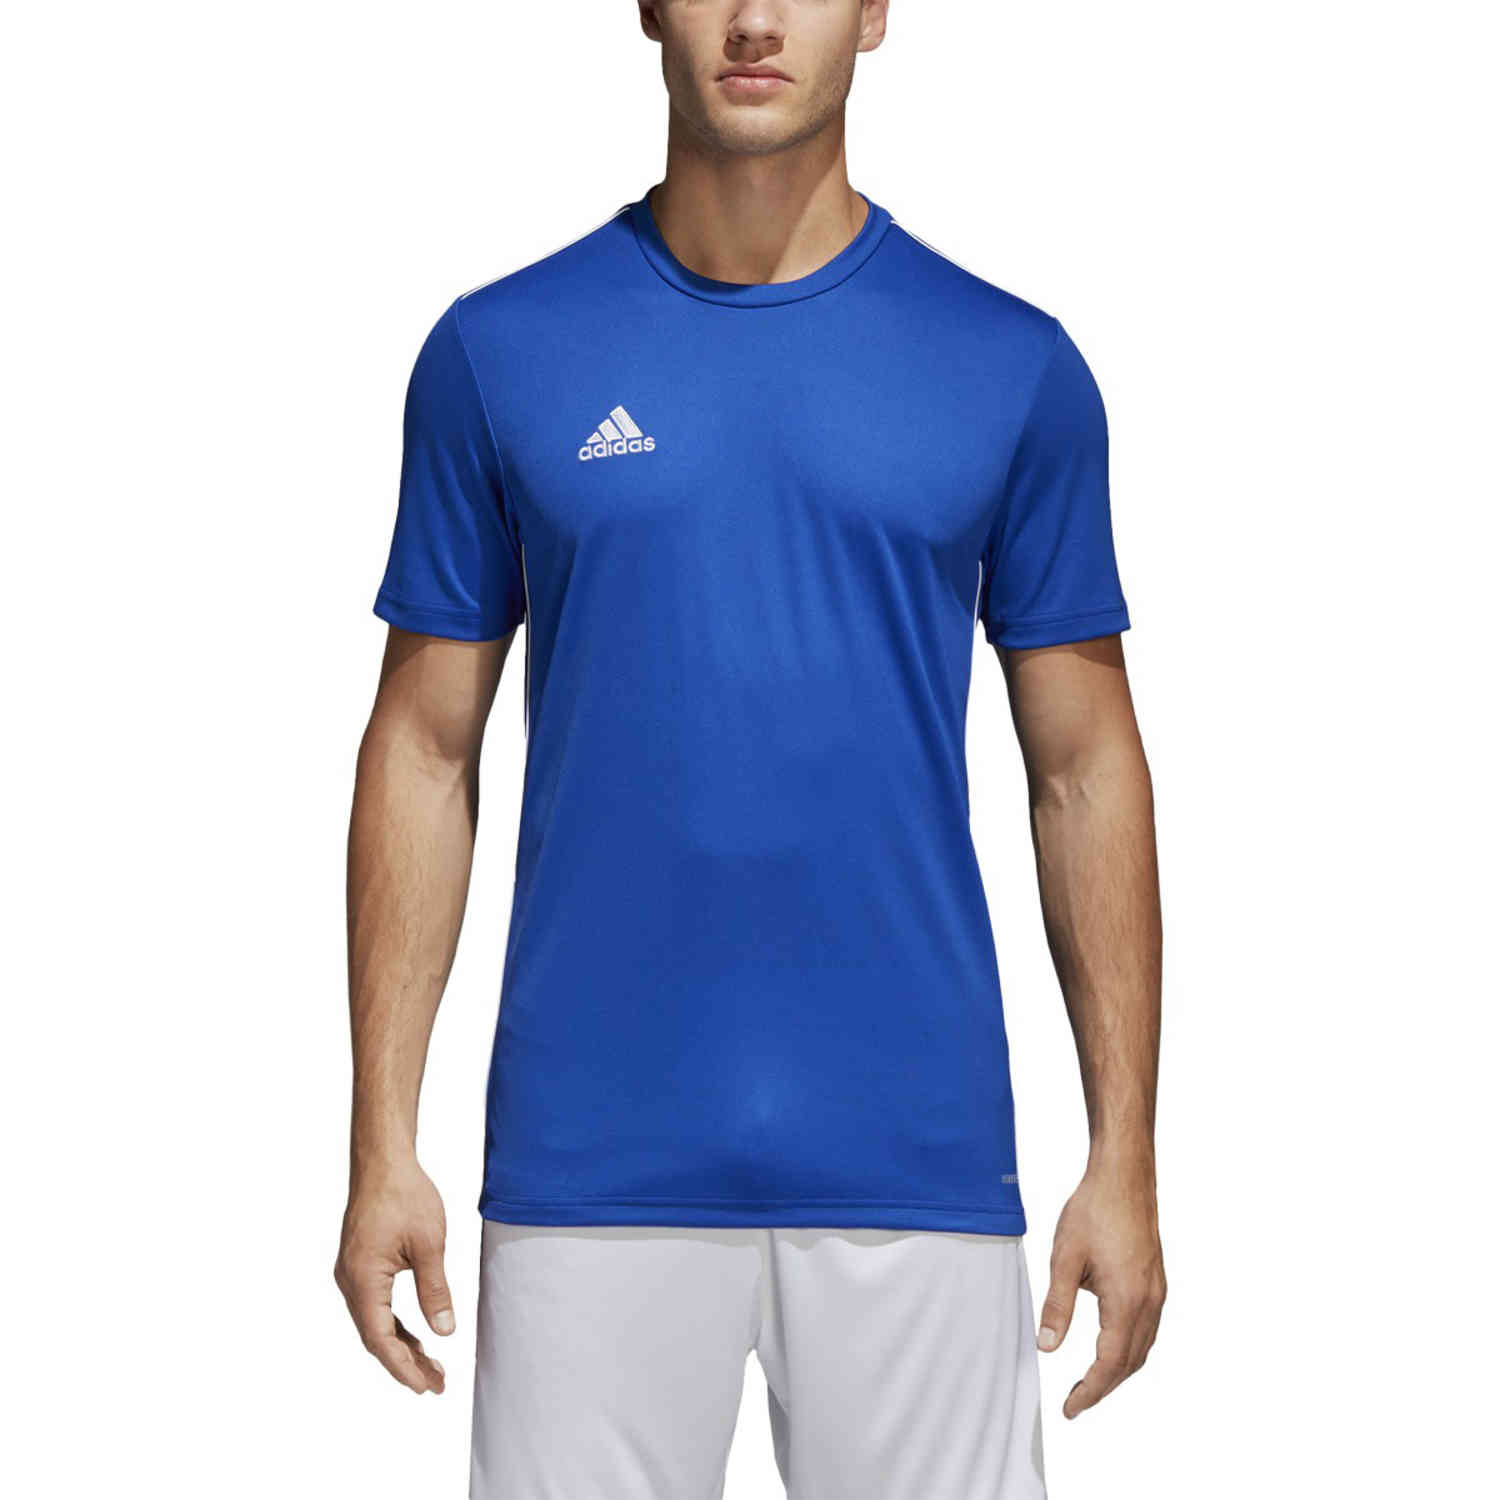 adidas Core 18 Training Jersey - Bold Blue/White - SoccerPro